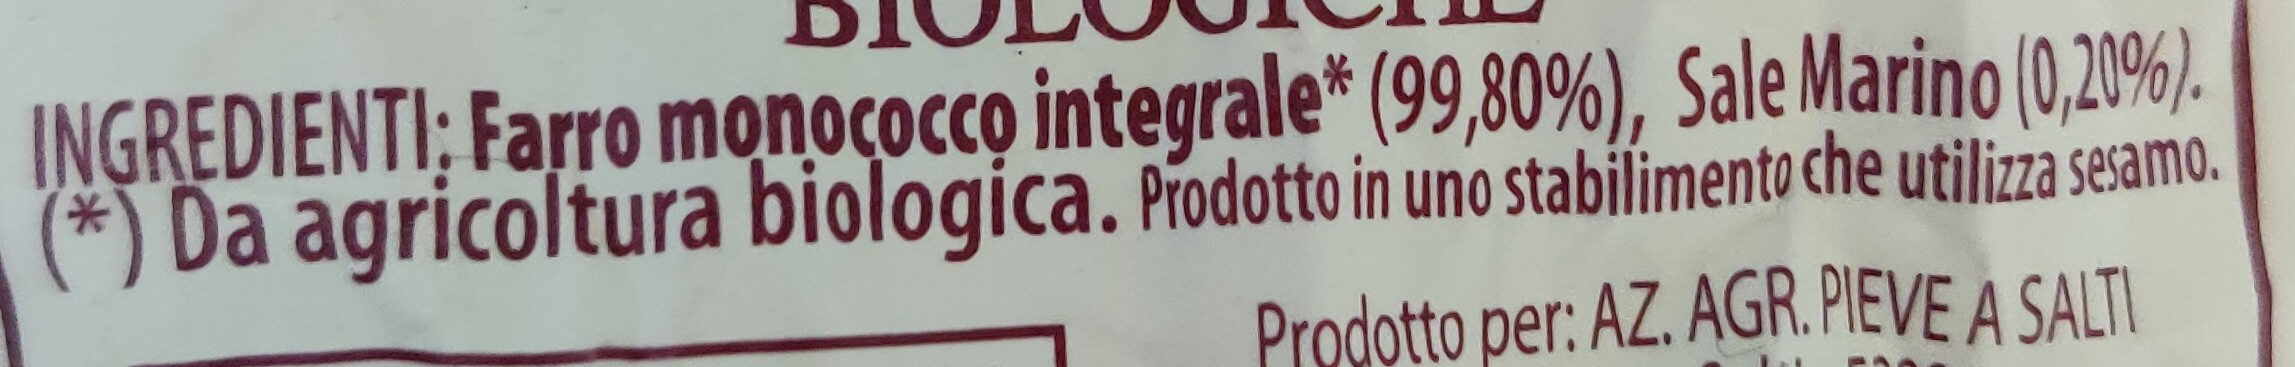 Gallette di farro monococco integrale - Ingredients - it